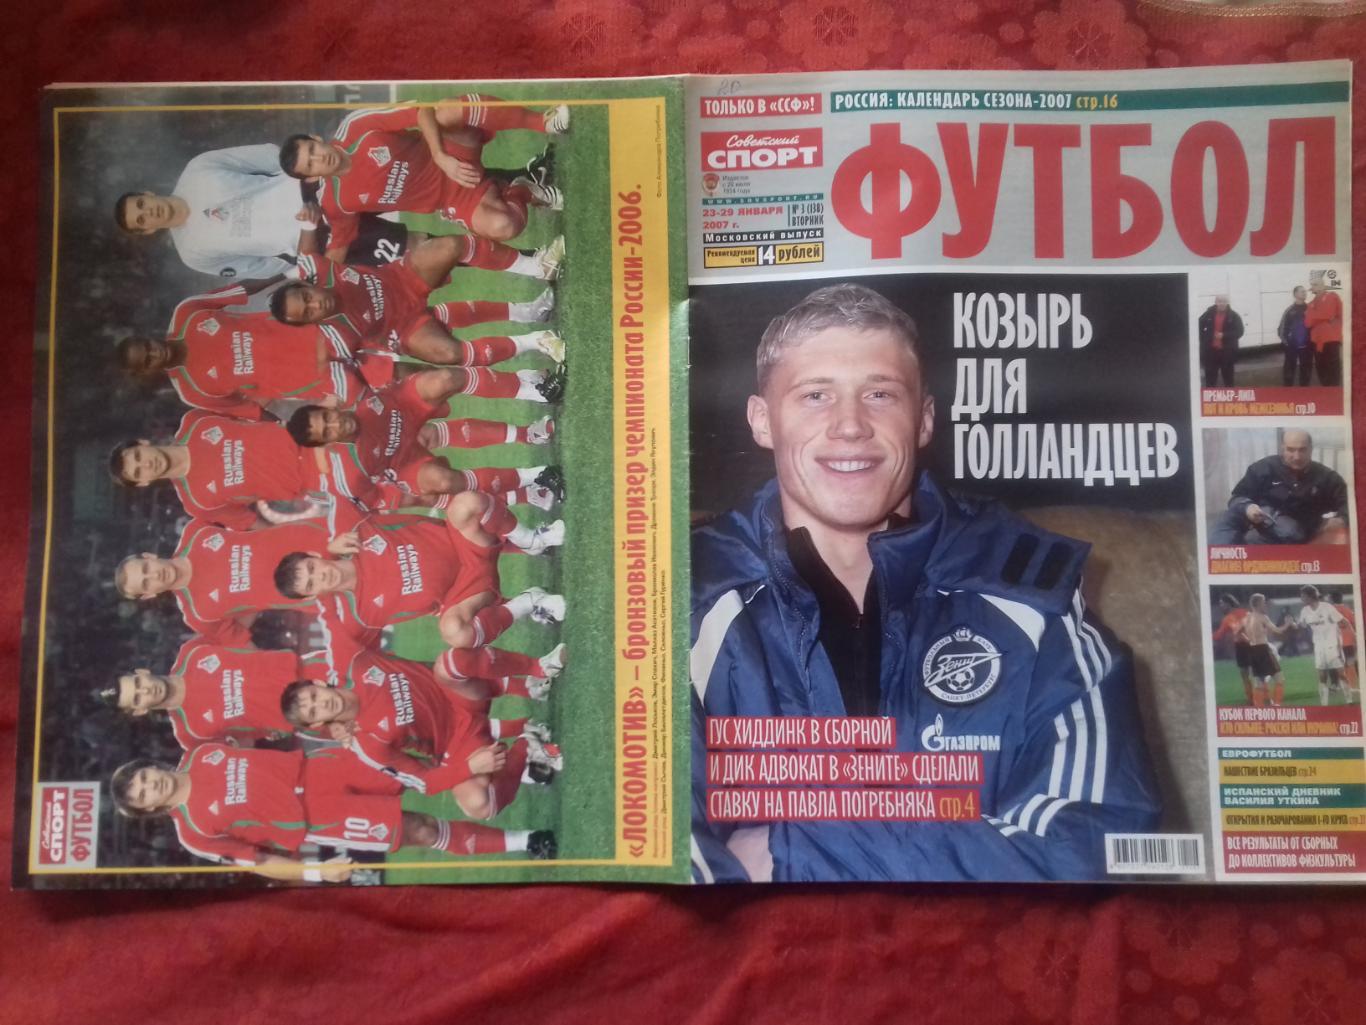 Журнал Футбол Советский спорт № 3 2007г. 32с Есть постер Локомотив Москва